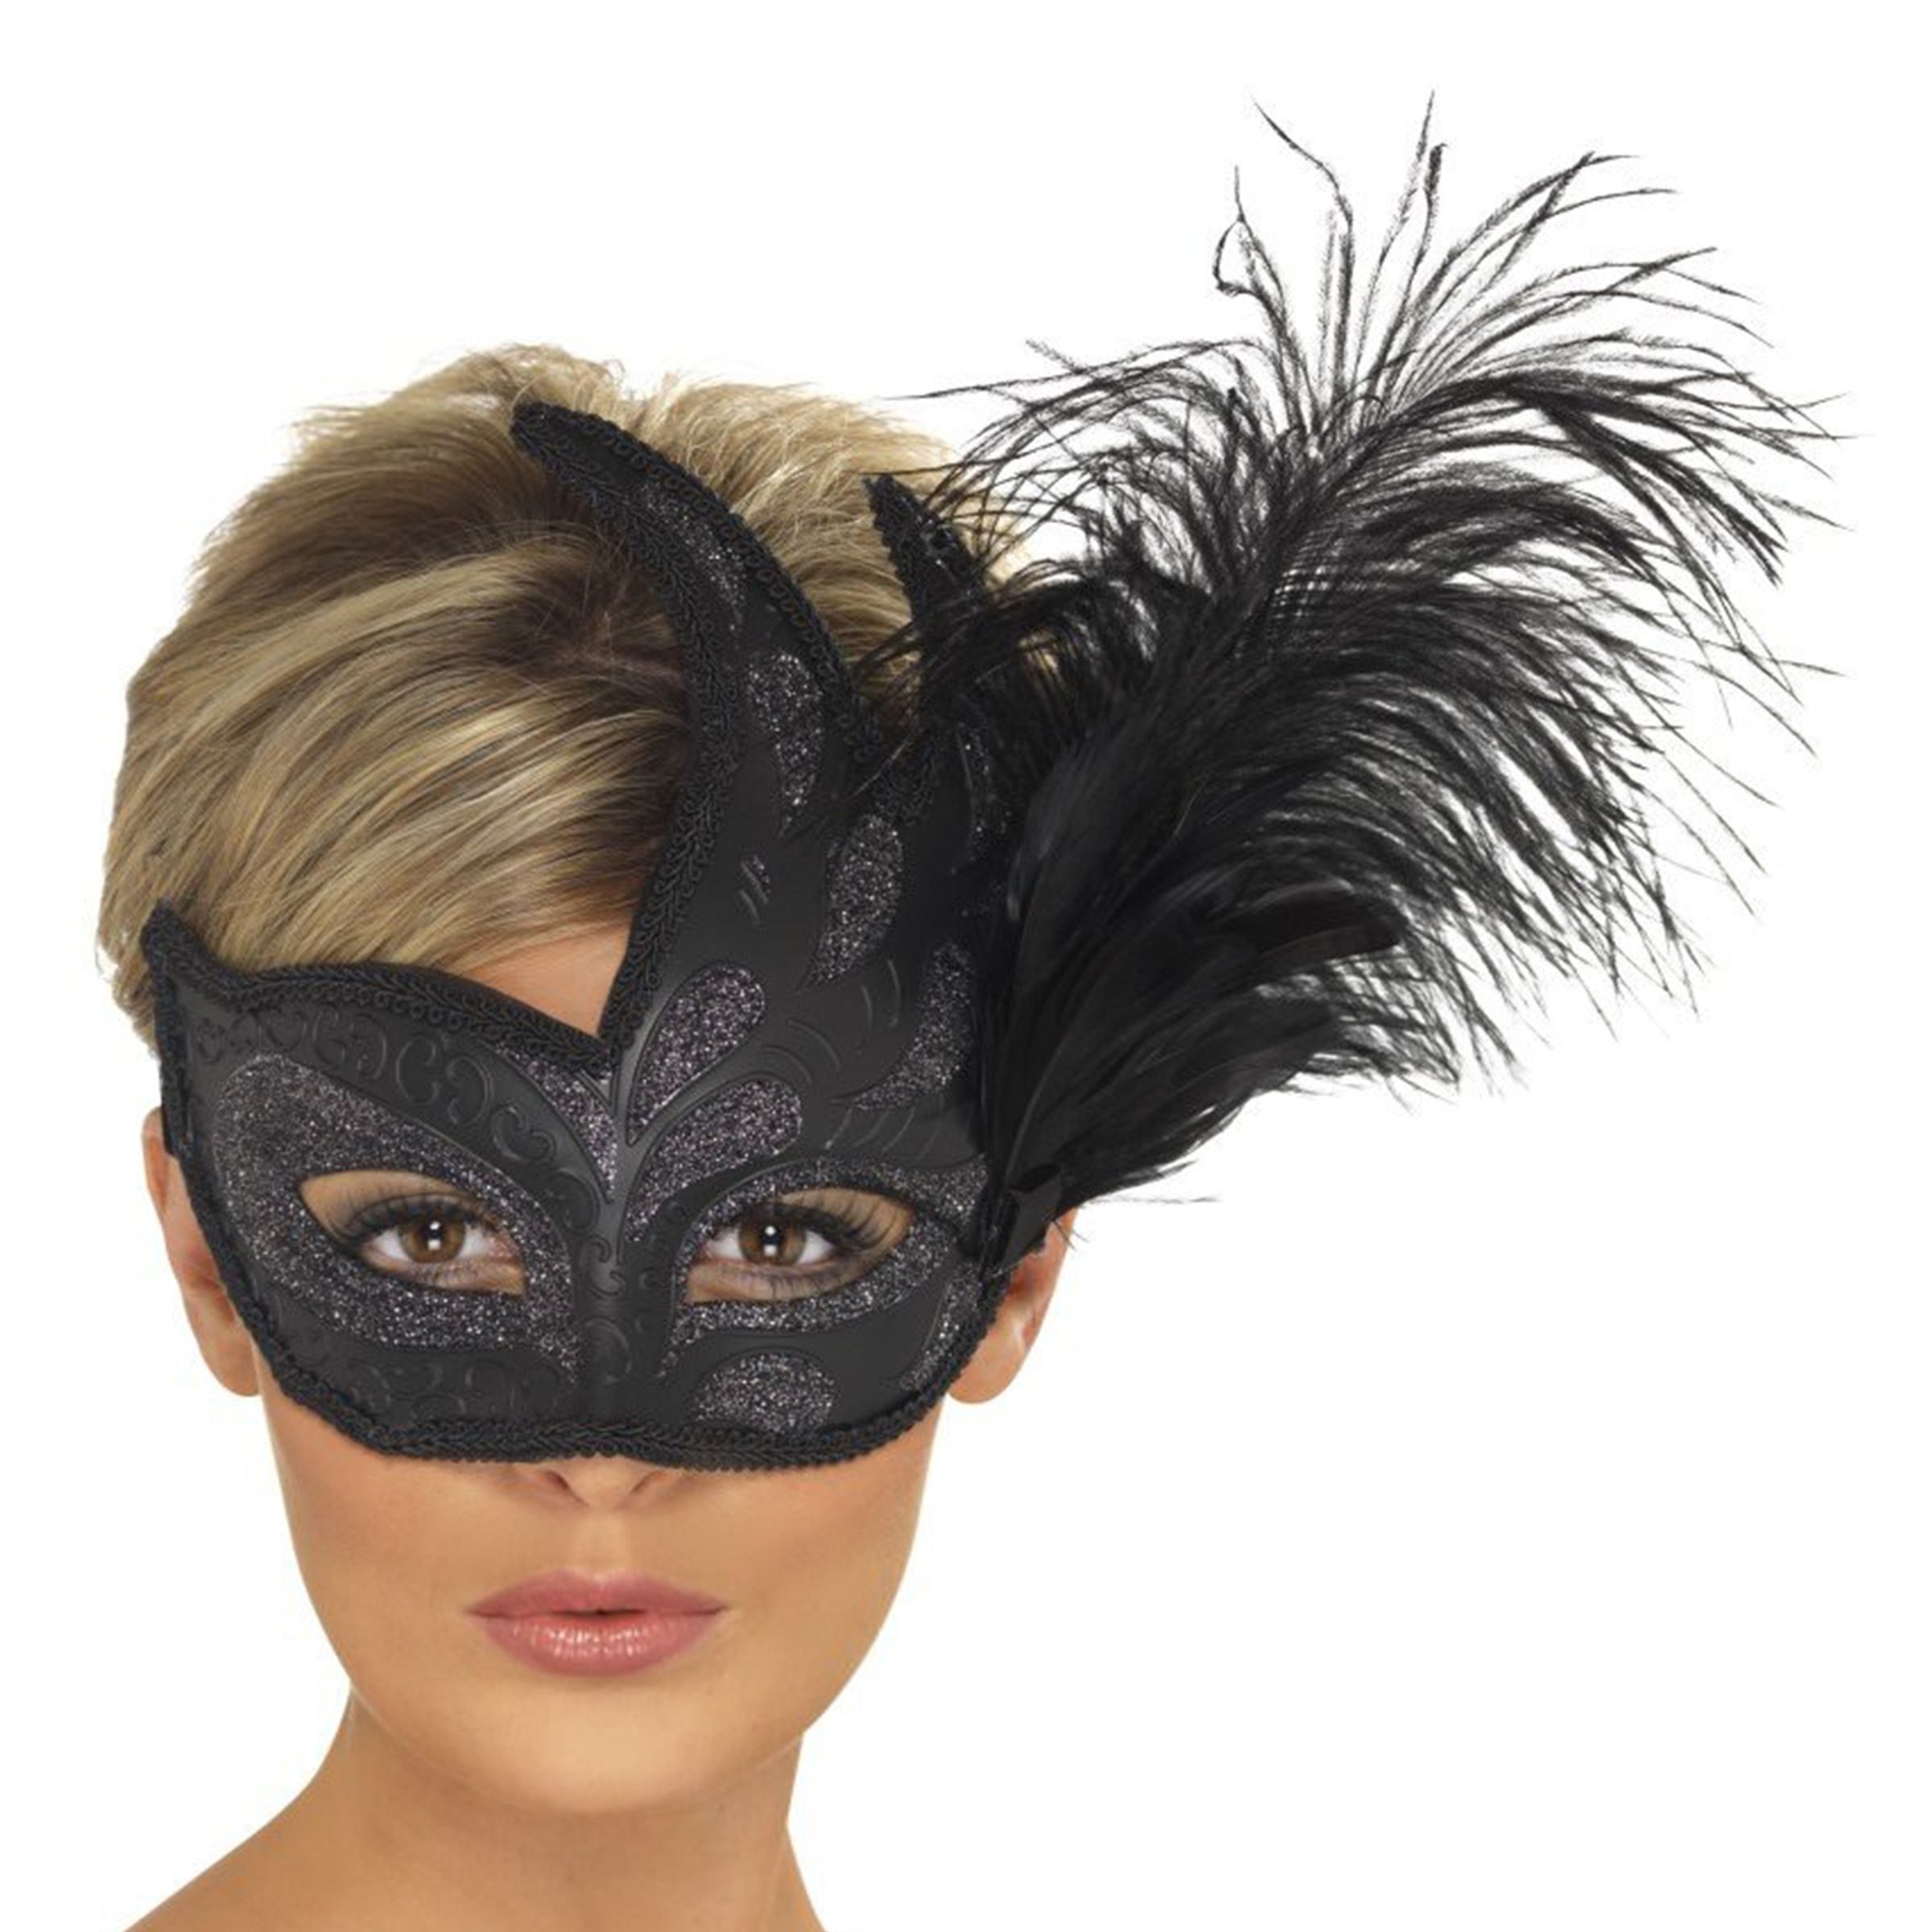 Colombina Svart Ögonmask - One size